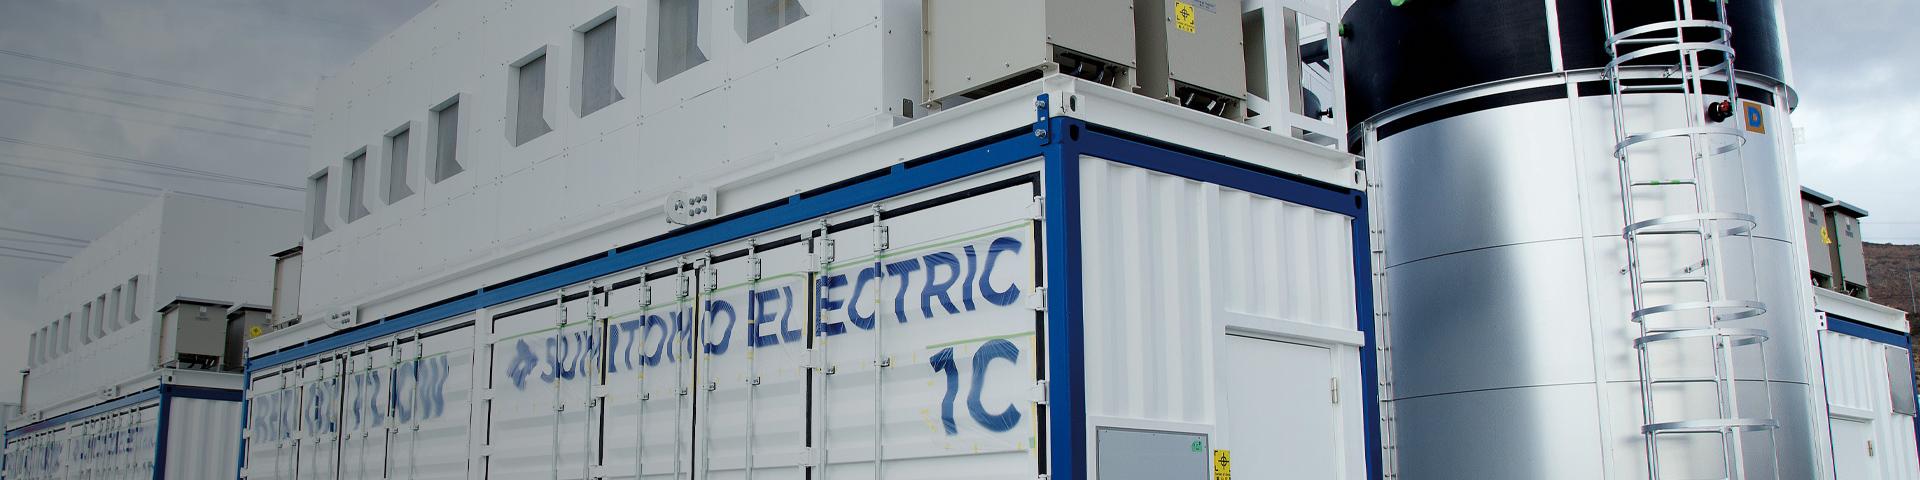 加州安装的氧化还原流储能电池系统:8,000 kWh (2,000 kW x 4 h)